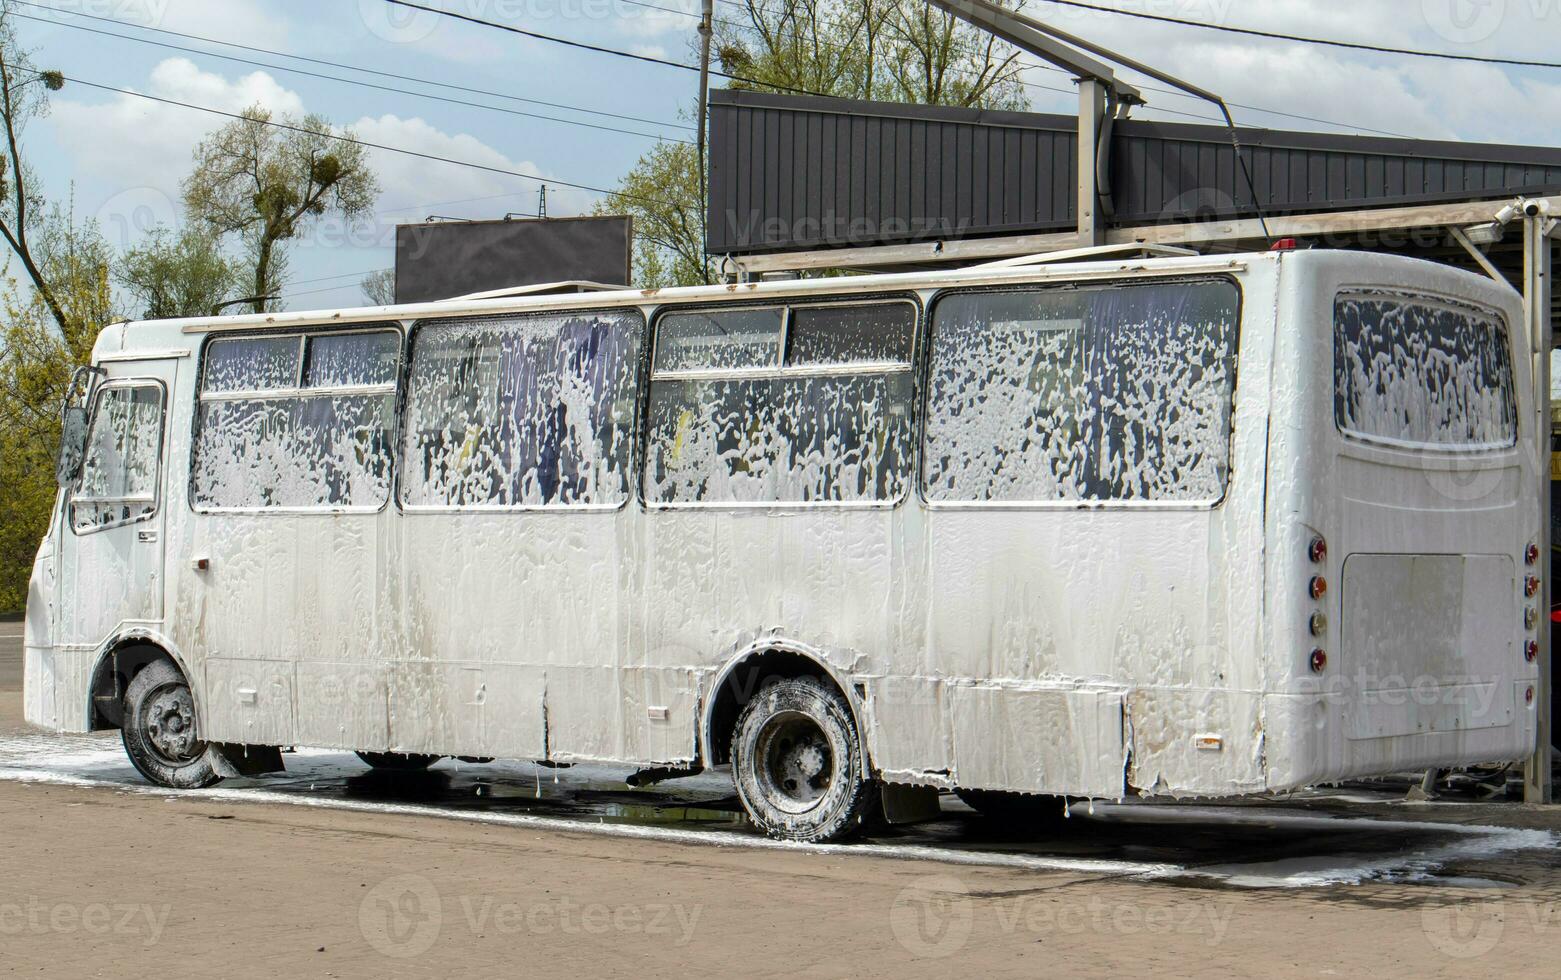 groß Weiß Bus im Schaum beim ein Selbstbedienung Auto waschen. extern Waschen von Öffentlichkeit Transport Busse. Selbstbedienung Handbuch hoher Druck Auto waschen im das öffnen Luft. foto